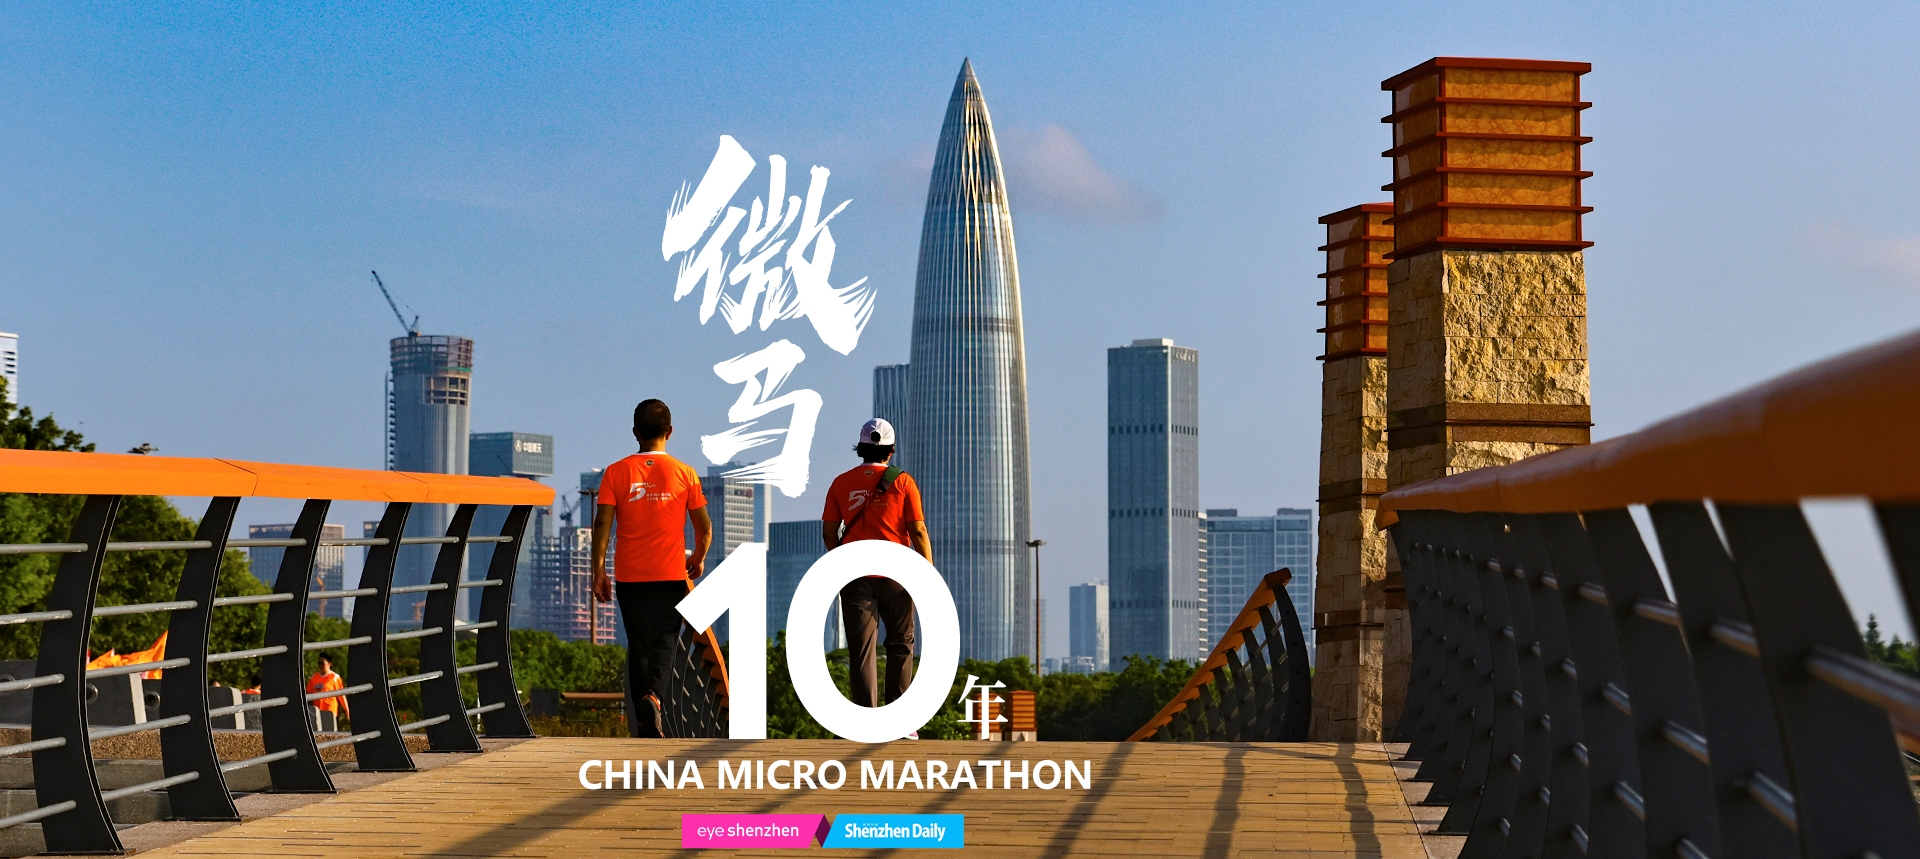 Мероприятие по бегу посвящено 10-летию Китайского микромарафона